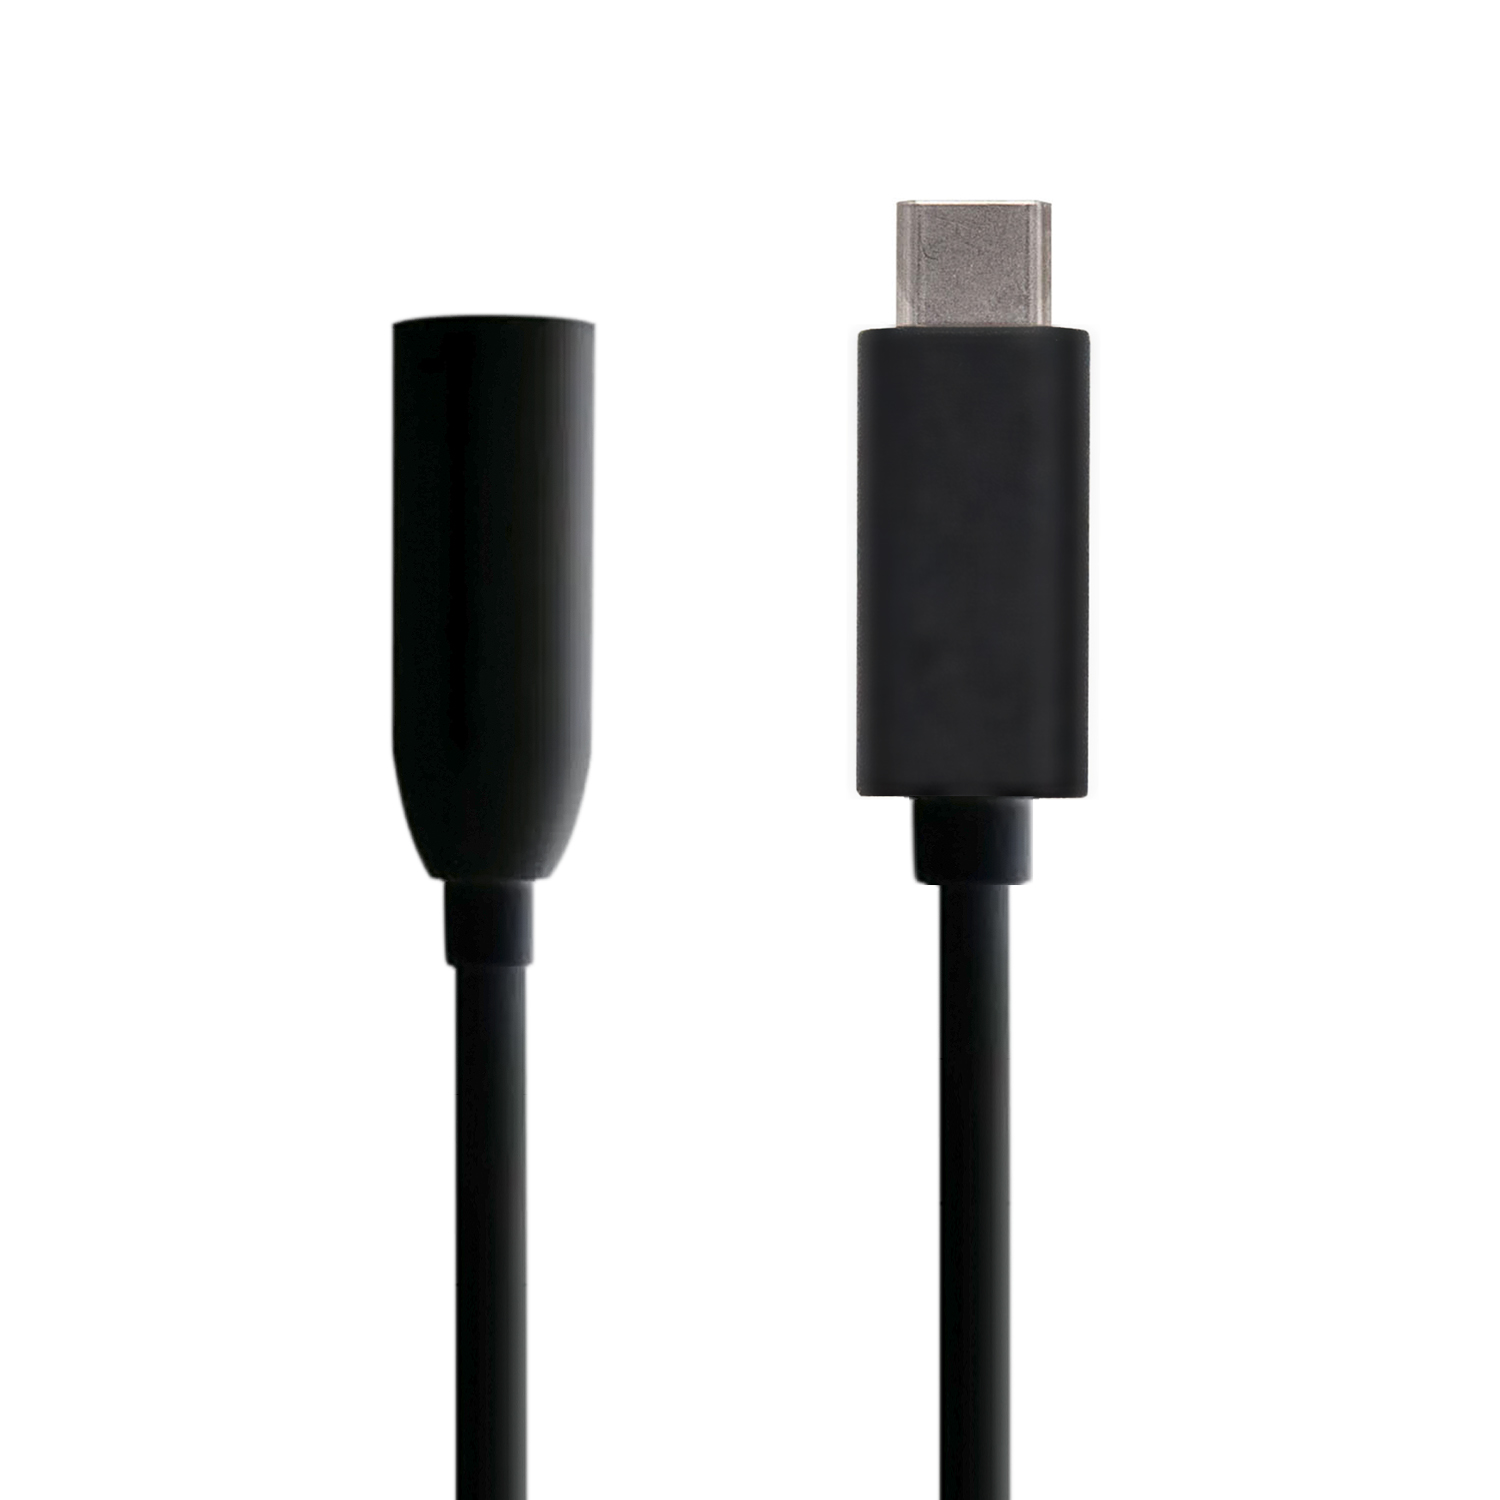 Cable adaptador tipo USB-C macho a Jack 3.5 hembra de color negro